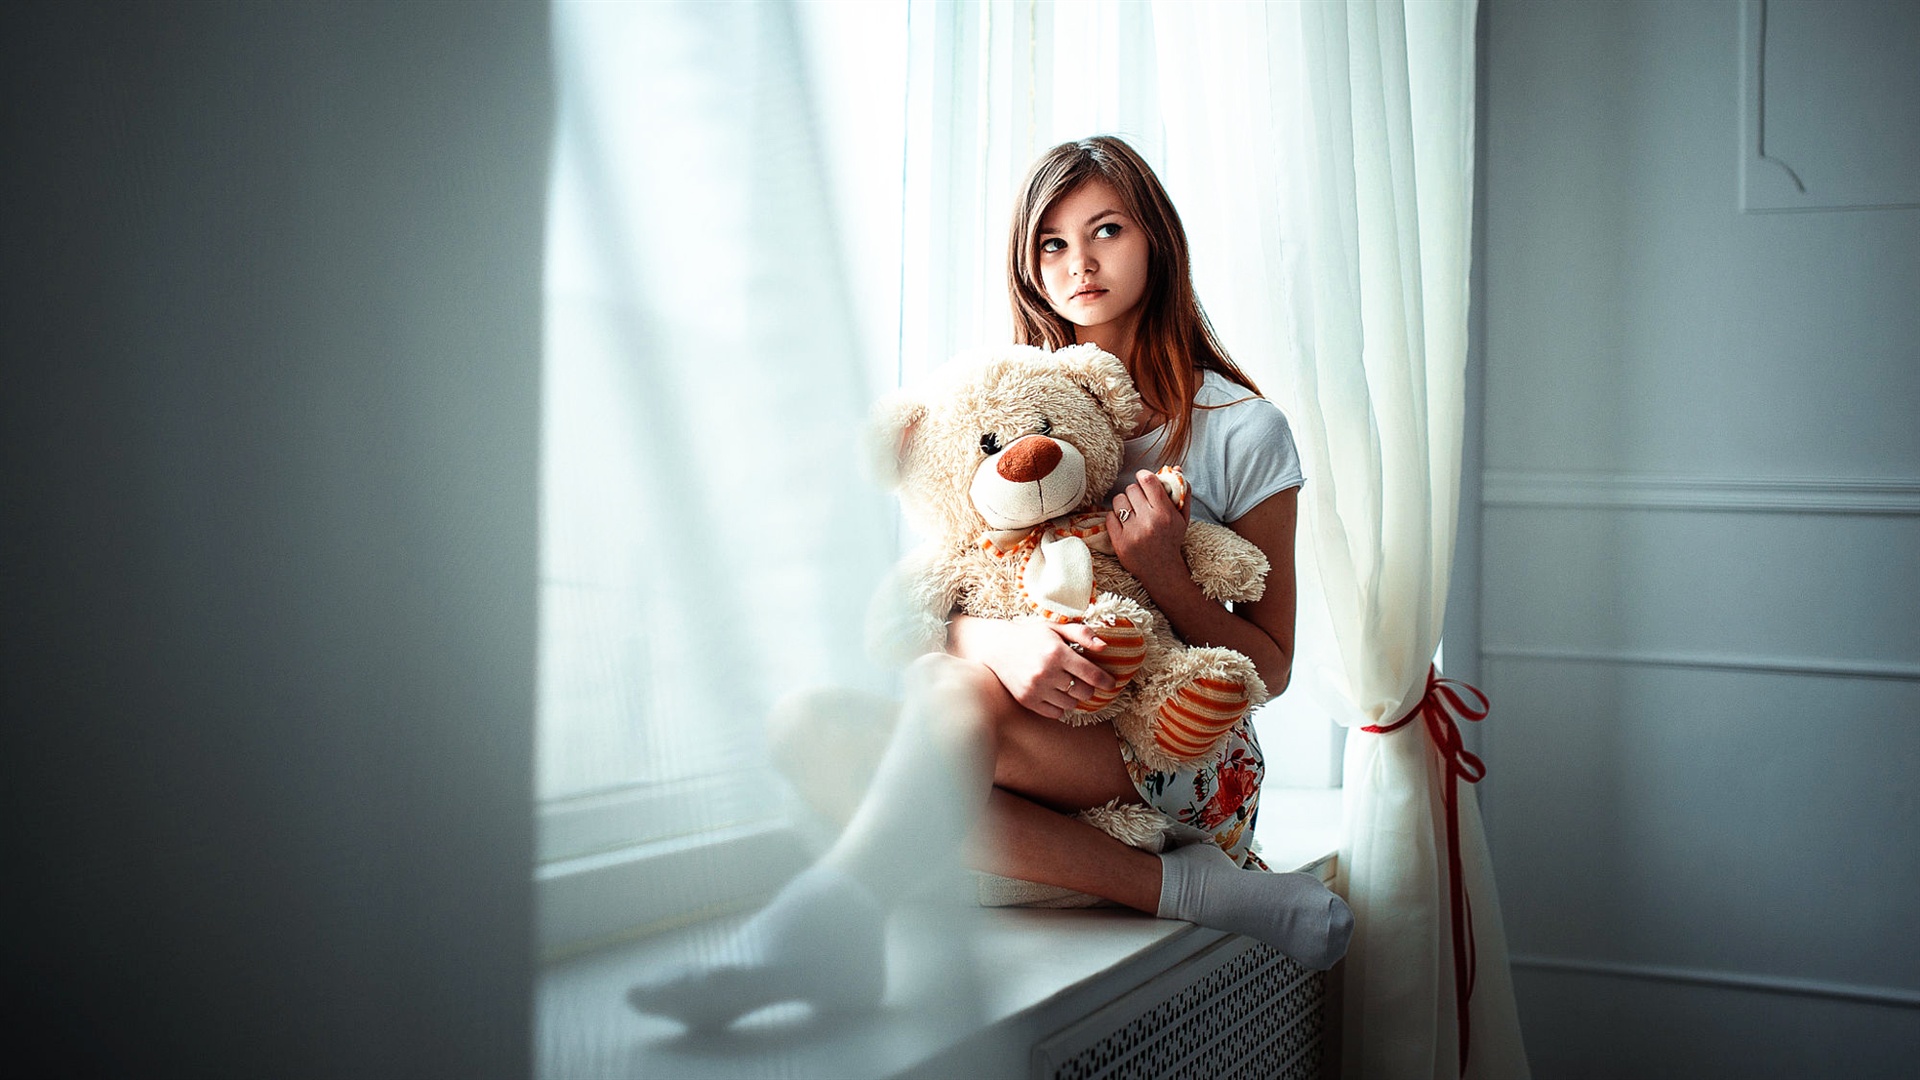 Hình ảnh cô gái có tâm trạng ngồi ôm gấu bông